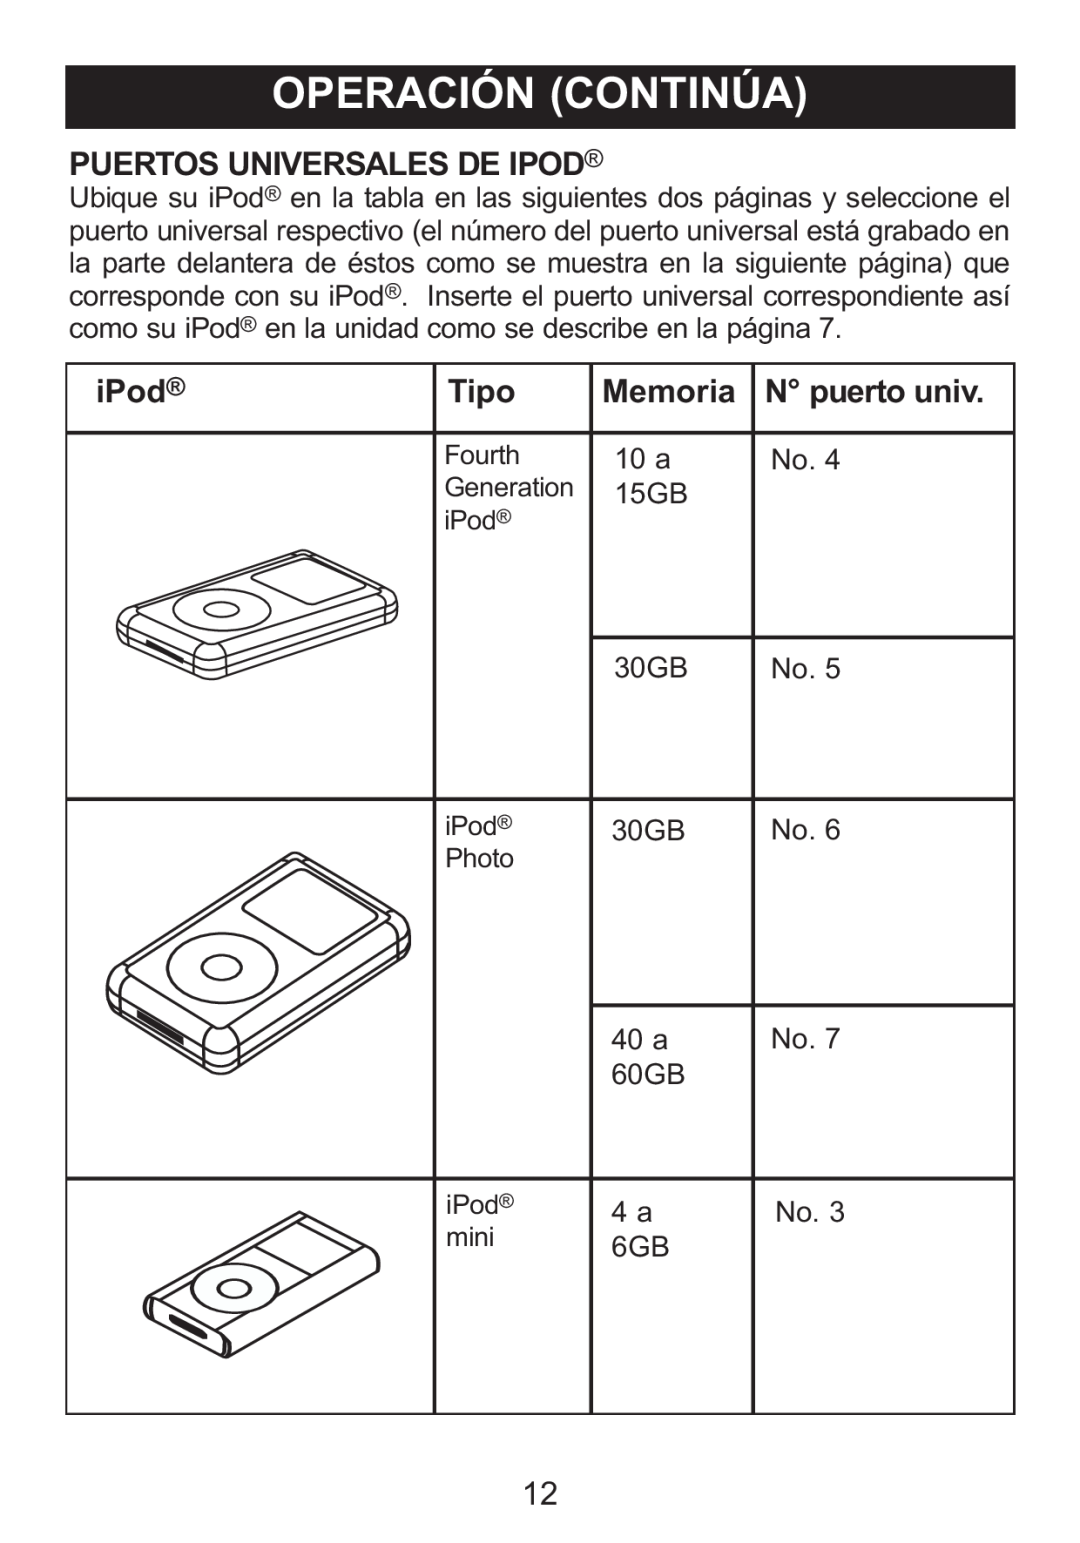 Memorex Mi1006 manual Puertos Universales De Ipod, iPod, Tipo, Memoria, N puerto univ 